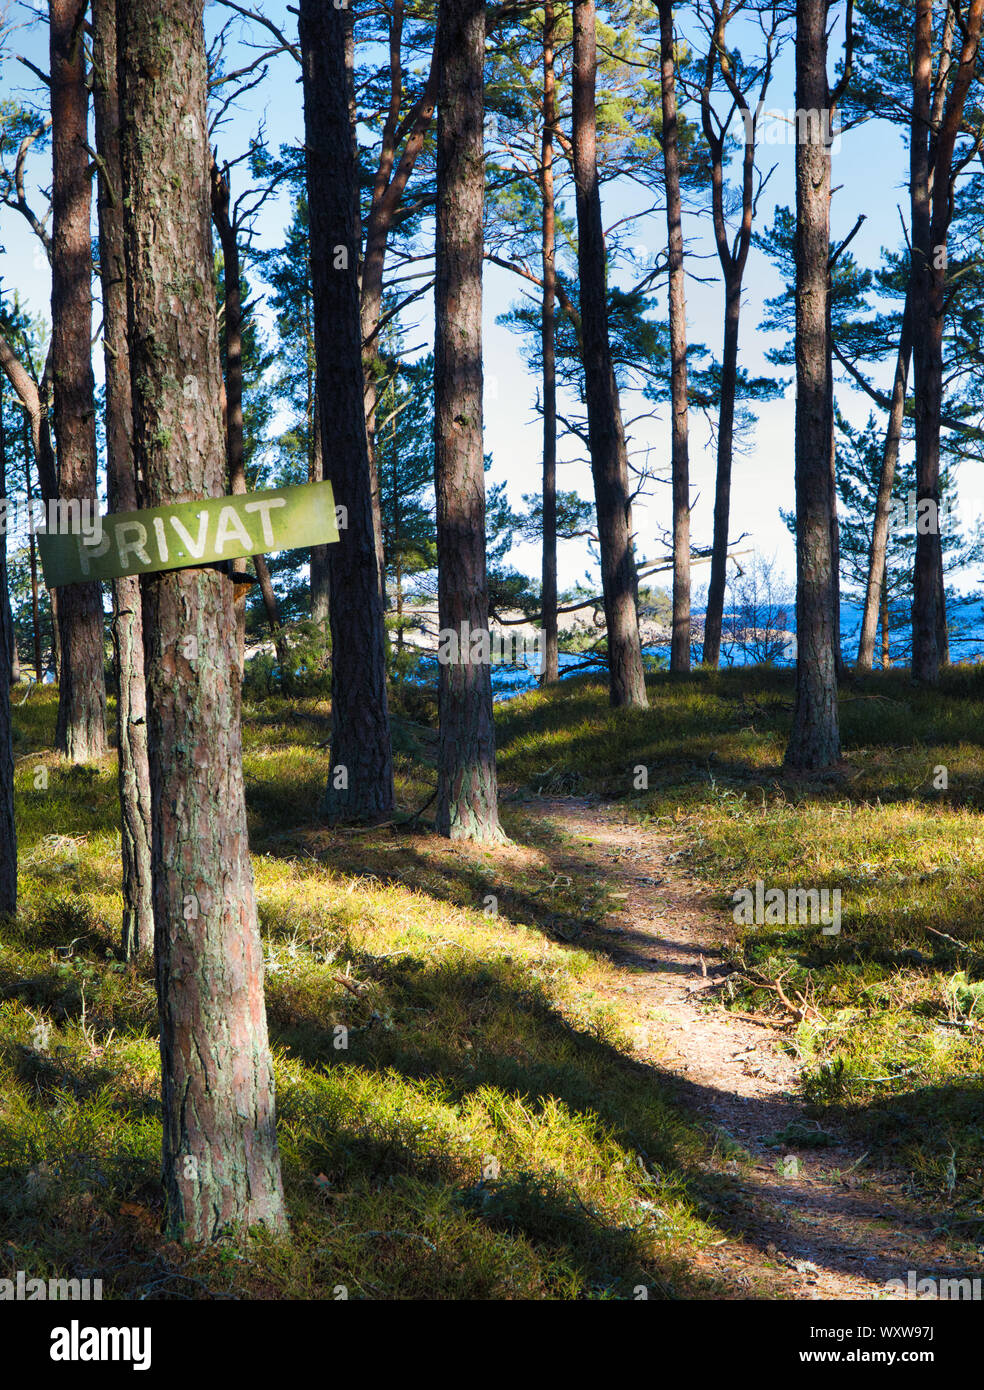 En bois rustique panneau privé attaché à l'arbre à côté du chemin forestier sur l'île de Sandhamn, archipel de Stockholm, Suède Banque D'Images